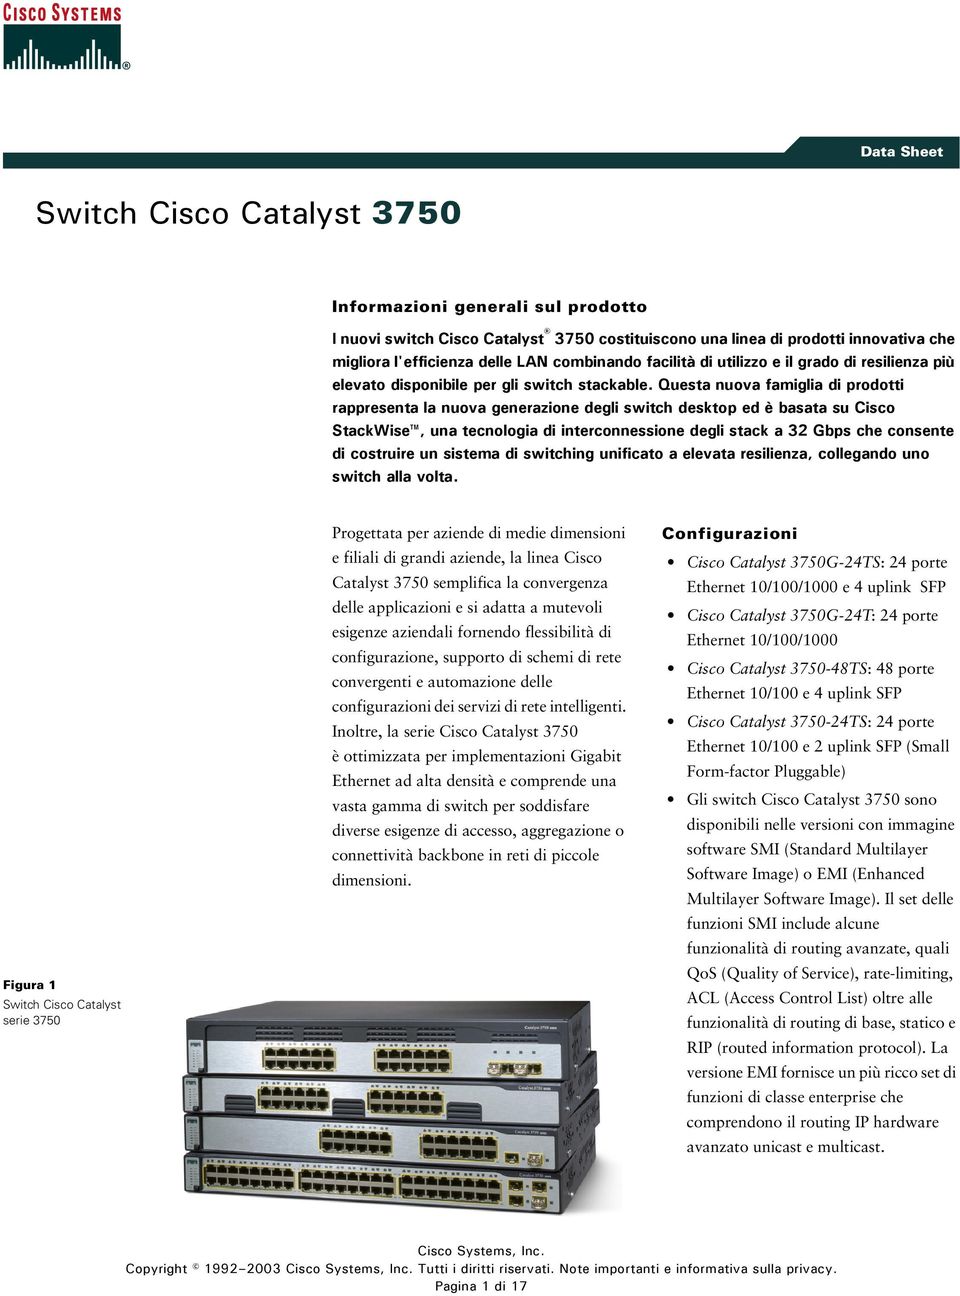 Questa nuova famiglia di prodotti rappresenta la nuova generazione degli switch desktop ed è basata su Cisco StackWise, una tecnologia di interconnessione degli stack a 32 Gbps che consente di